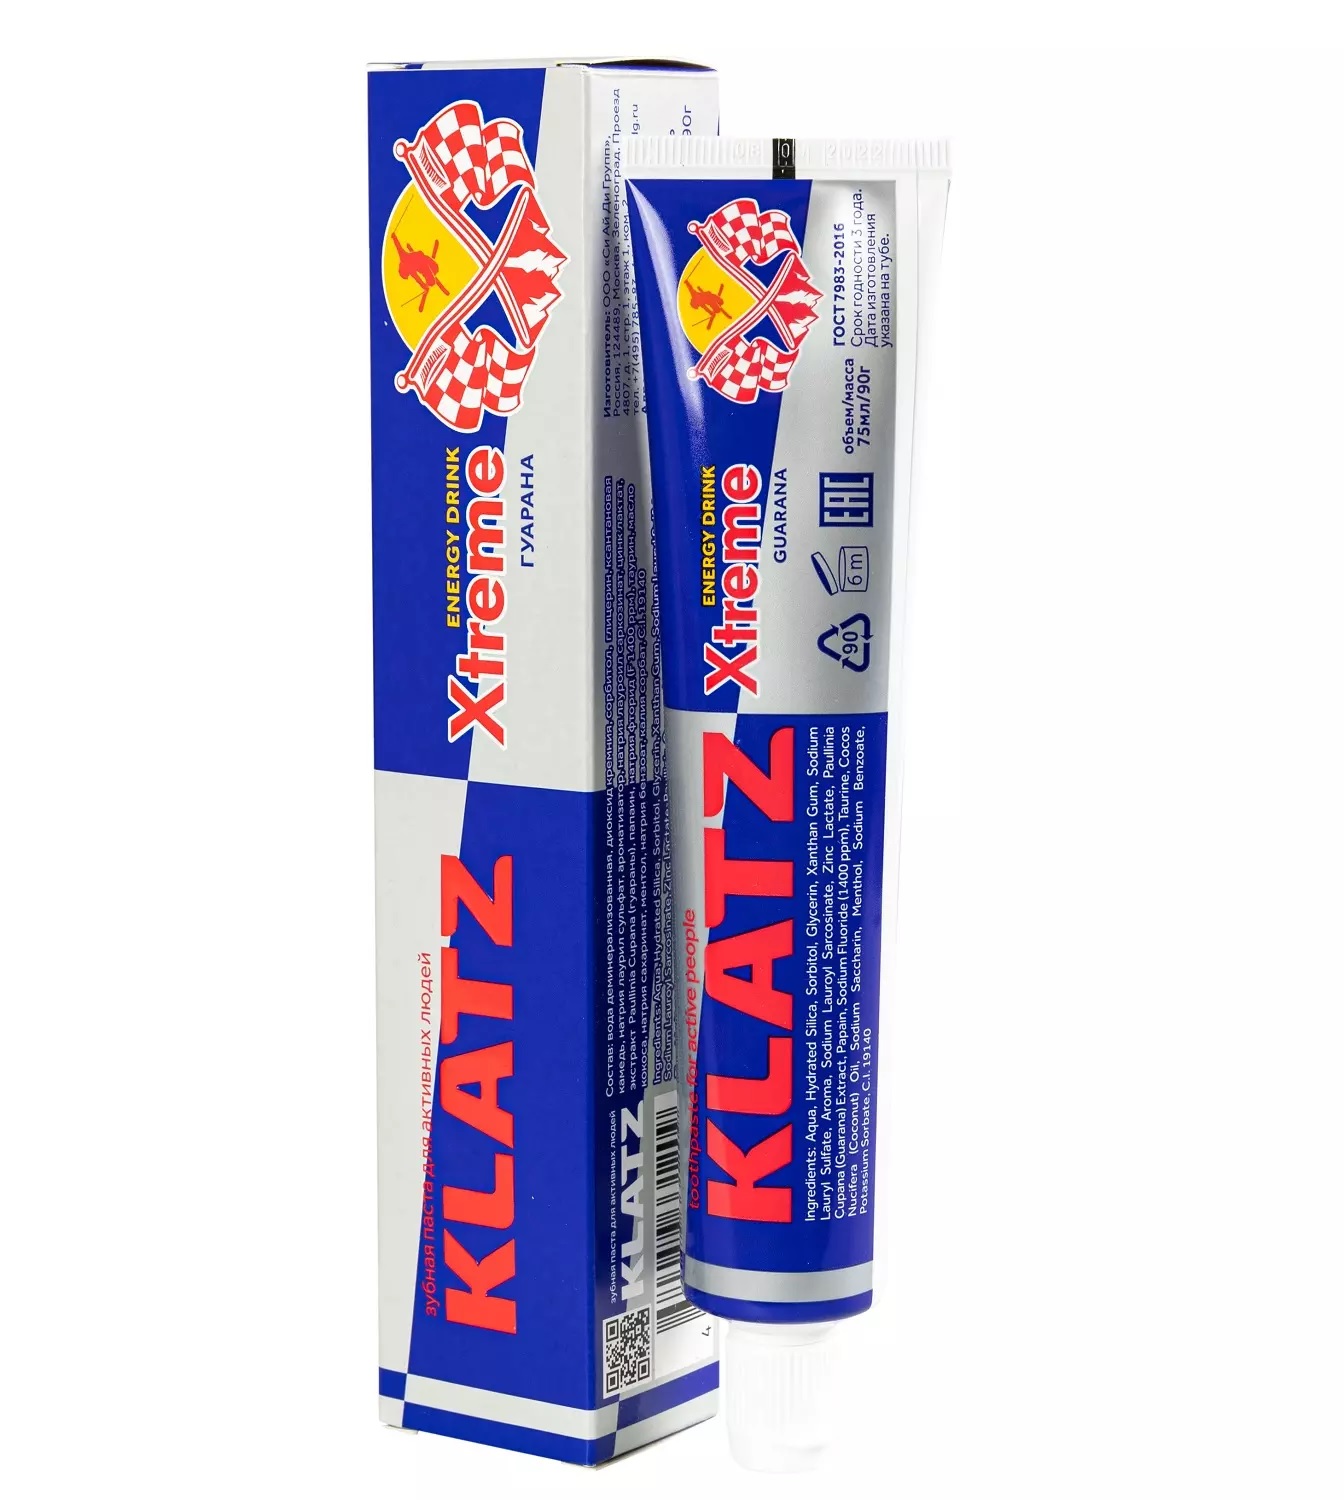 Паста зубная Klatz X-treme Energy Drink для активных людей, гуарана, 75 мл klatz паста зубная для активных людей женьшень x treme energy drink 75 мл